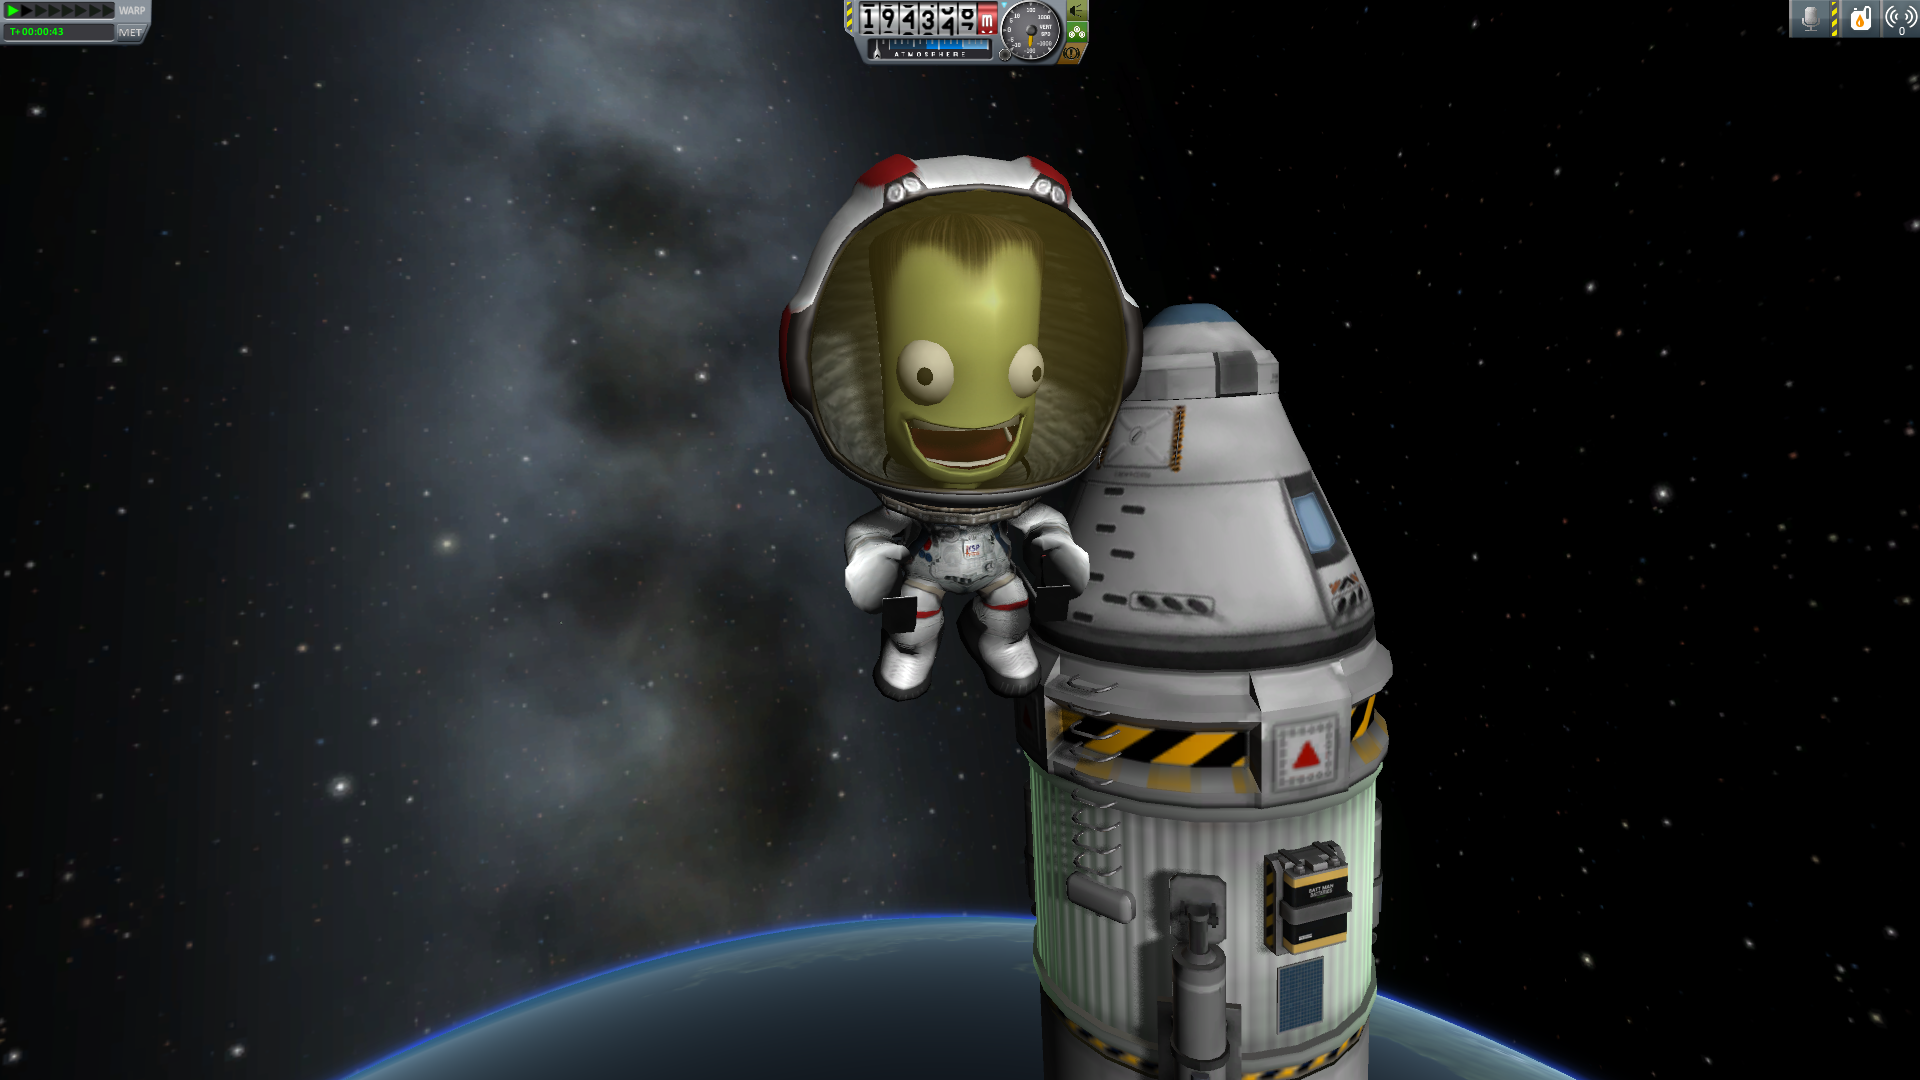 A Kerbal floating in space in Kerbal Space Program.